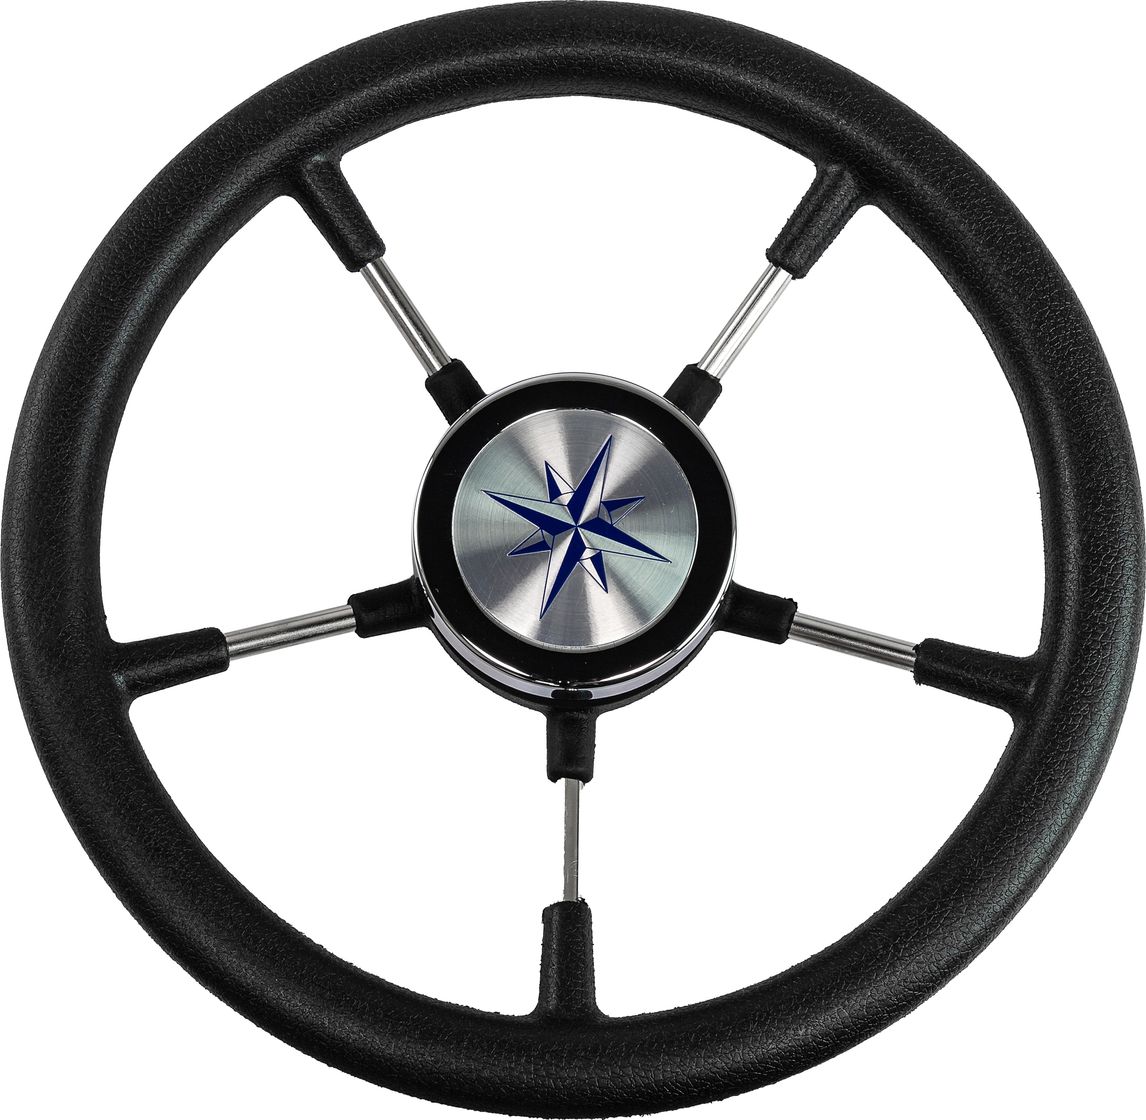 Рулевое колесо RIVA RSL обод черный, спицы серебряные д. 320 мм VN732022-01 рулевое колесо riva rsl обод белый спицы серебряные д 360 мм vn735022 08